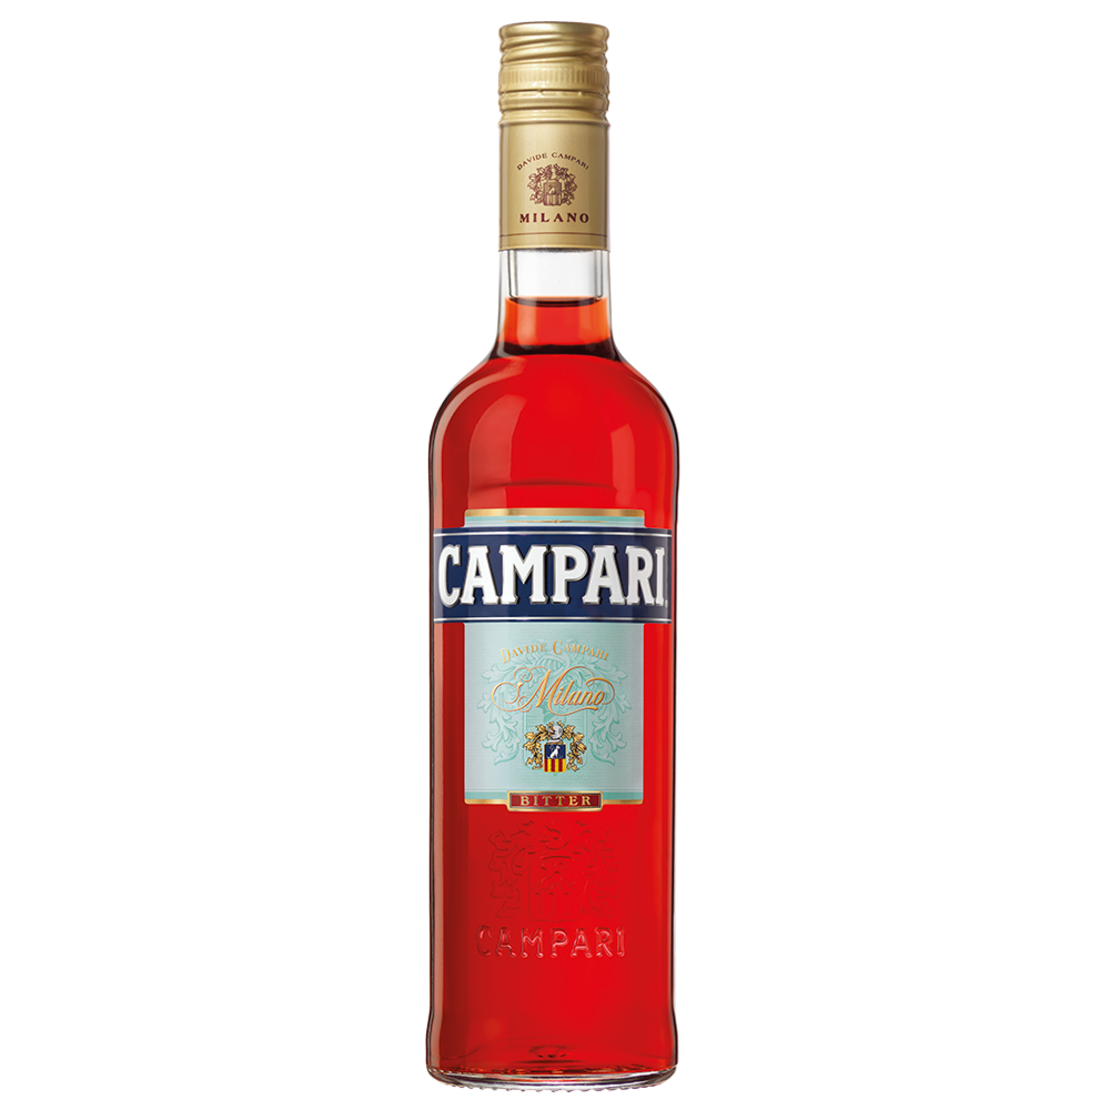 קמפרי 1 ליטר- CAMPARI